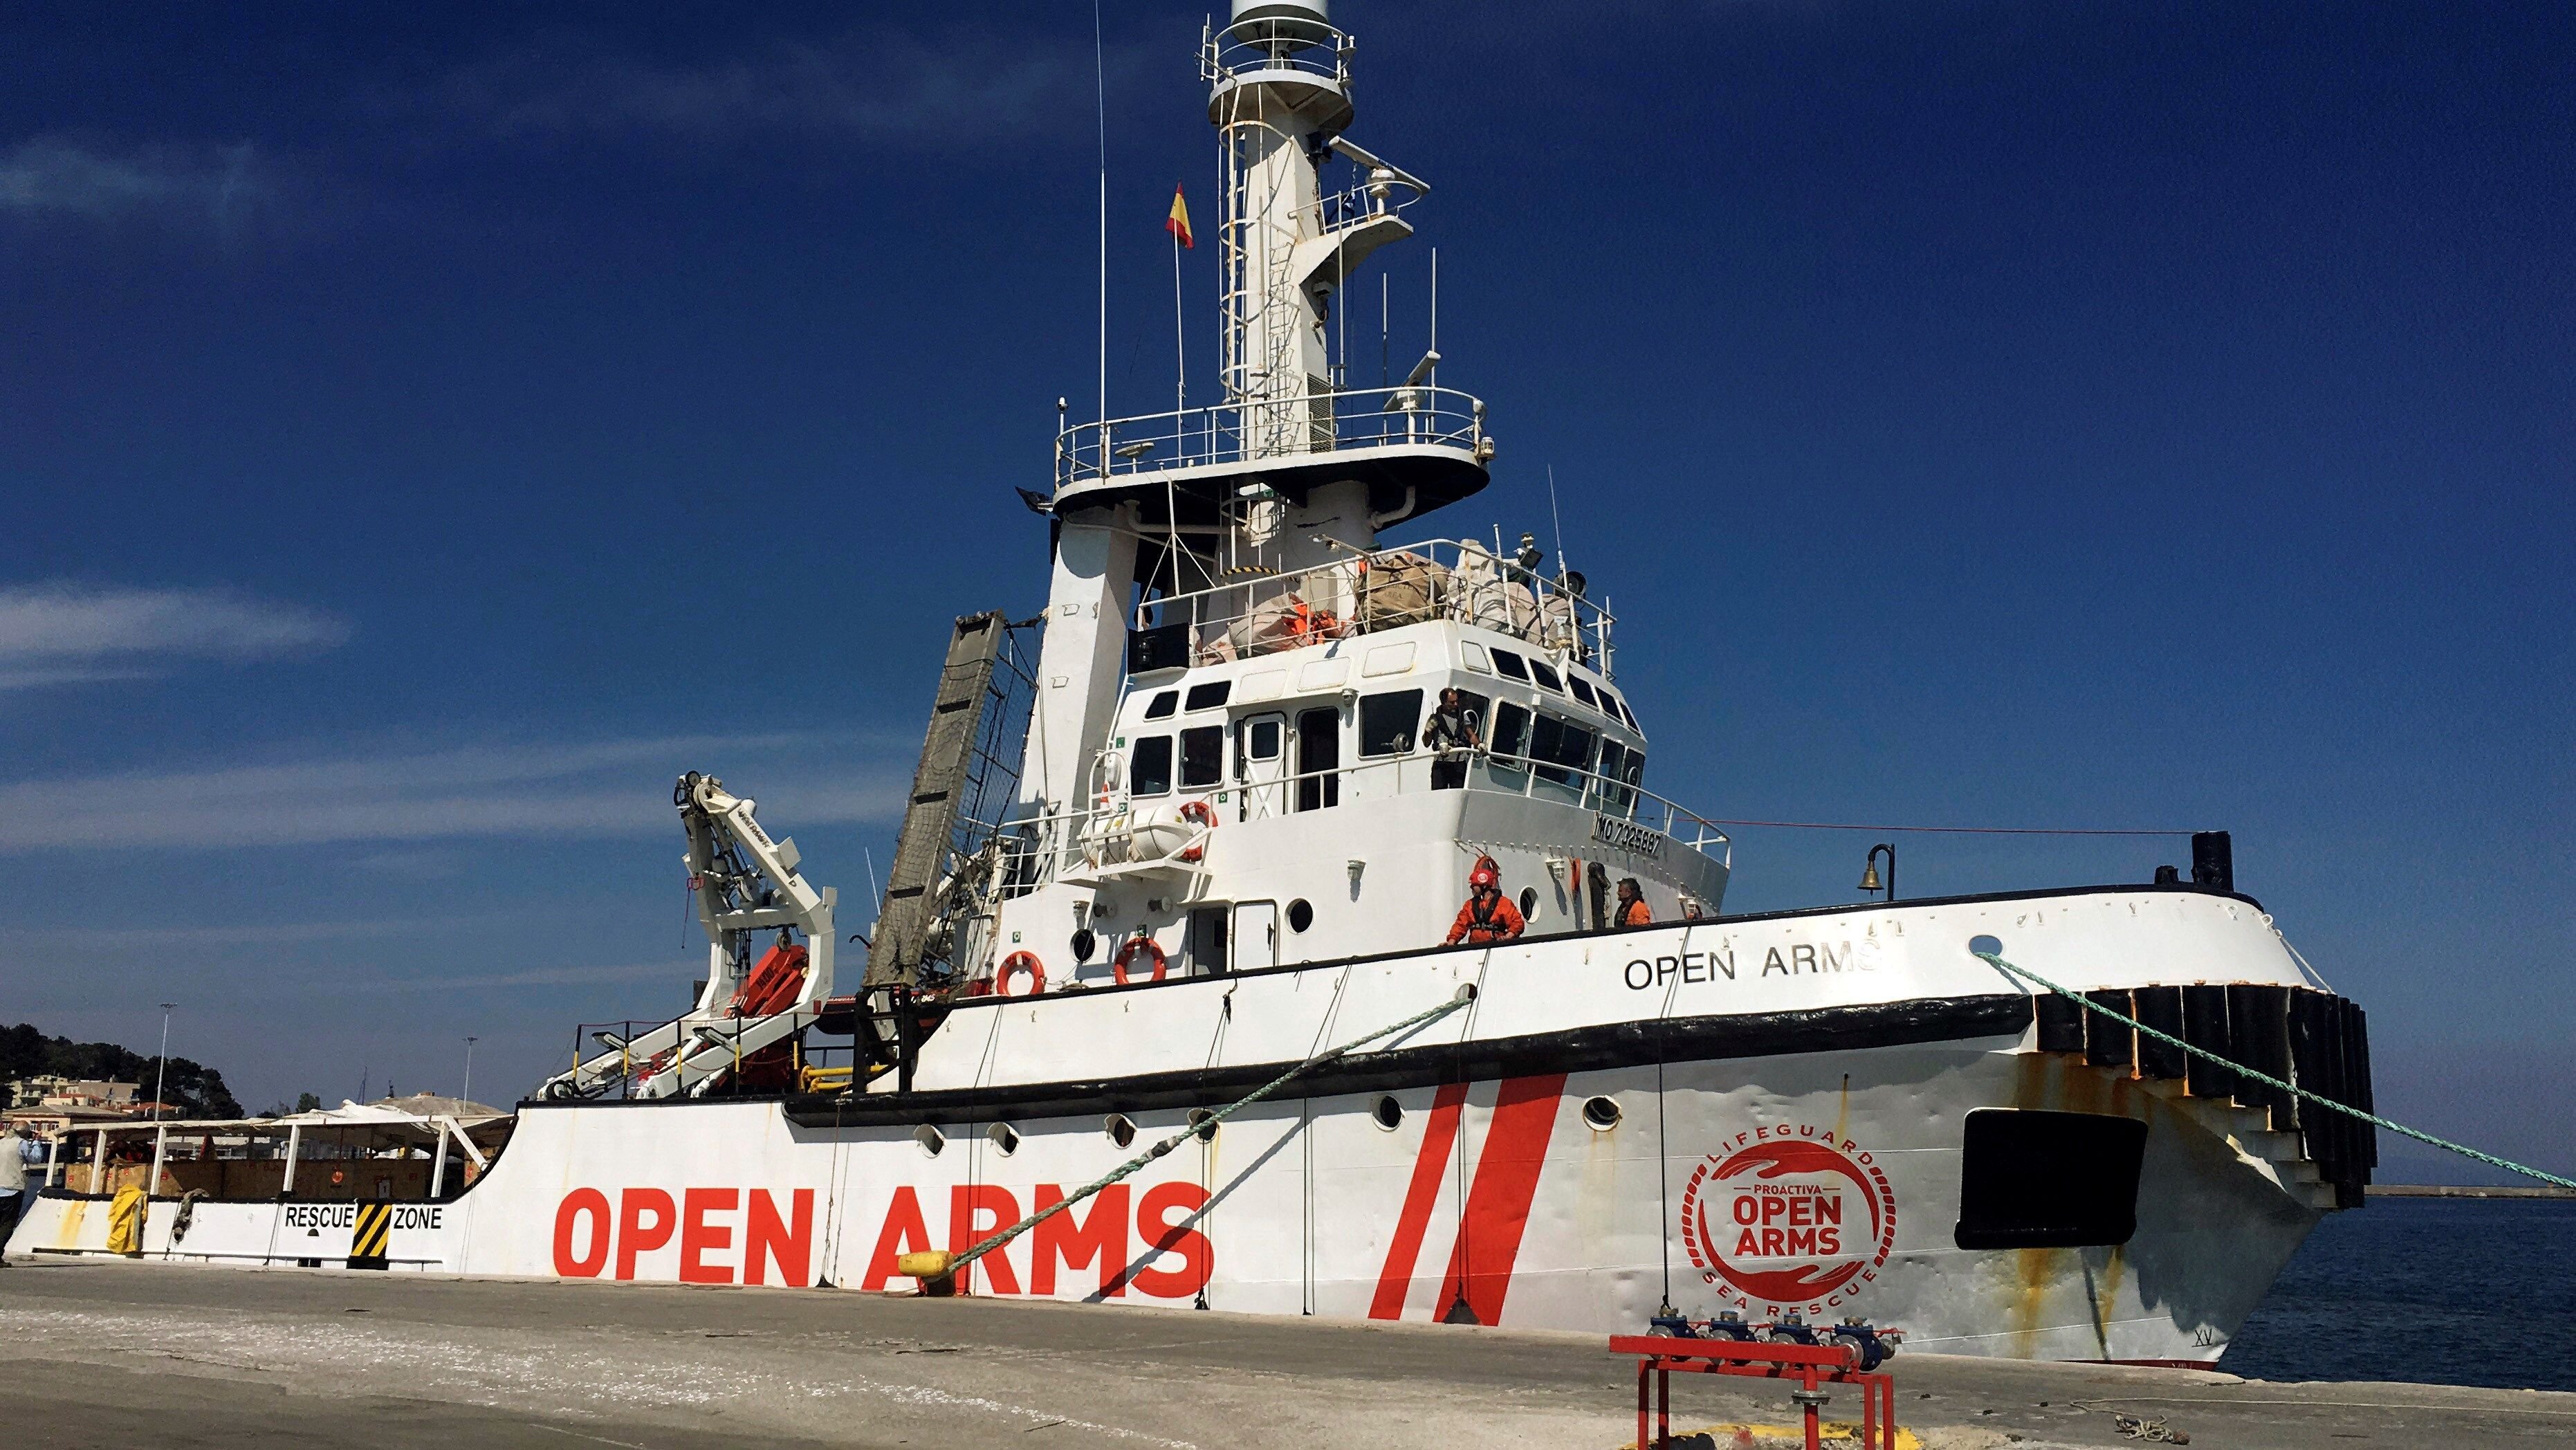 El Open Arms rescata a 124 personas en el Mediterráneo y busca puerto seguro